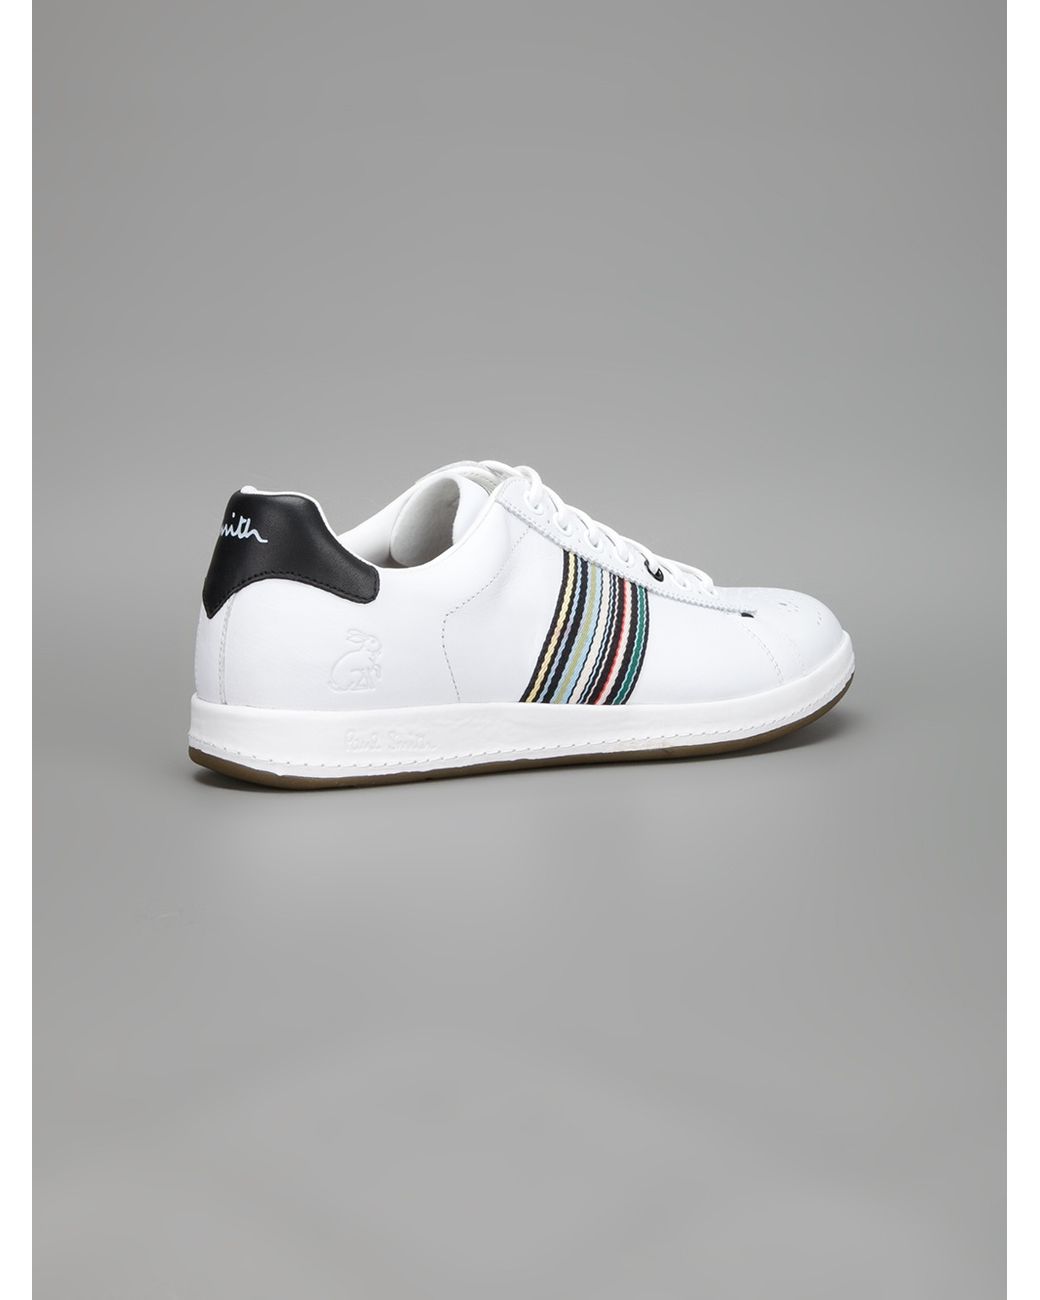 Paul Smith Rabbit Sneaker in White for Men | Lyst